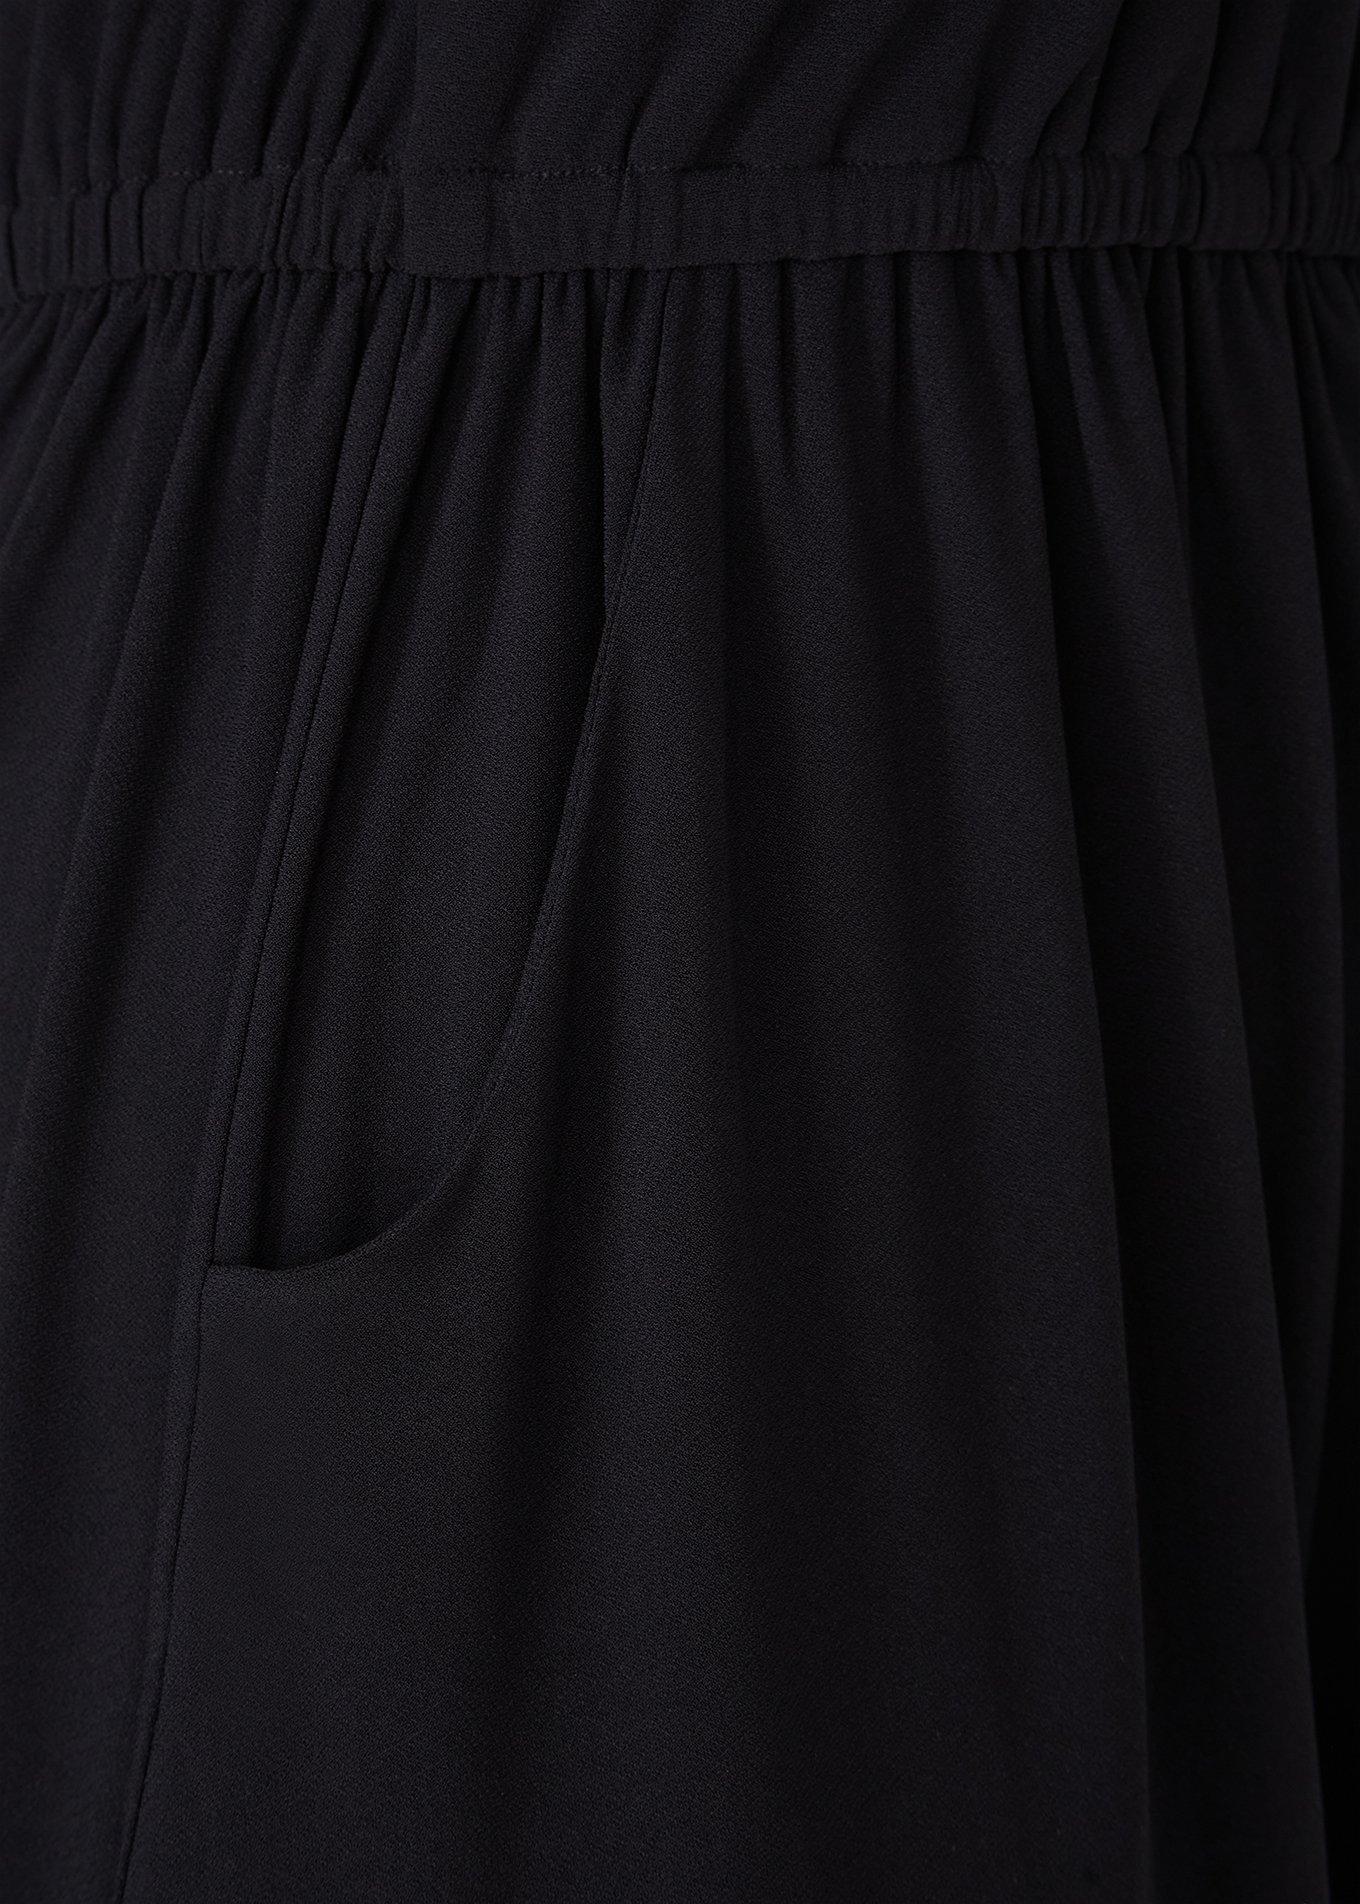 Plus Size - Black Crepe High Neck Skater Dress - Torrid